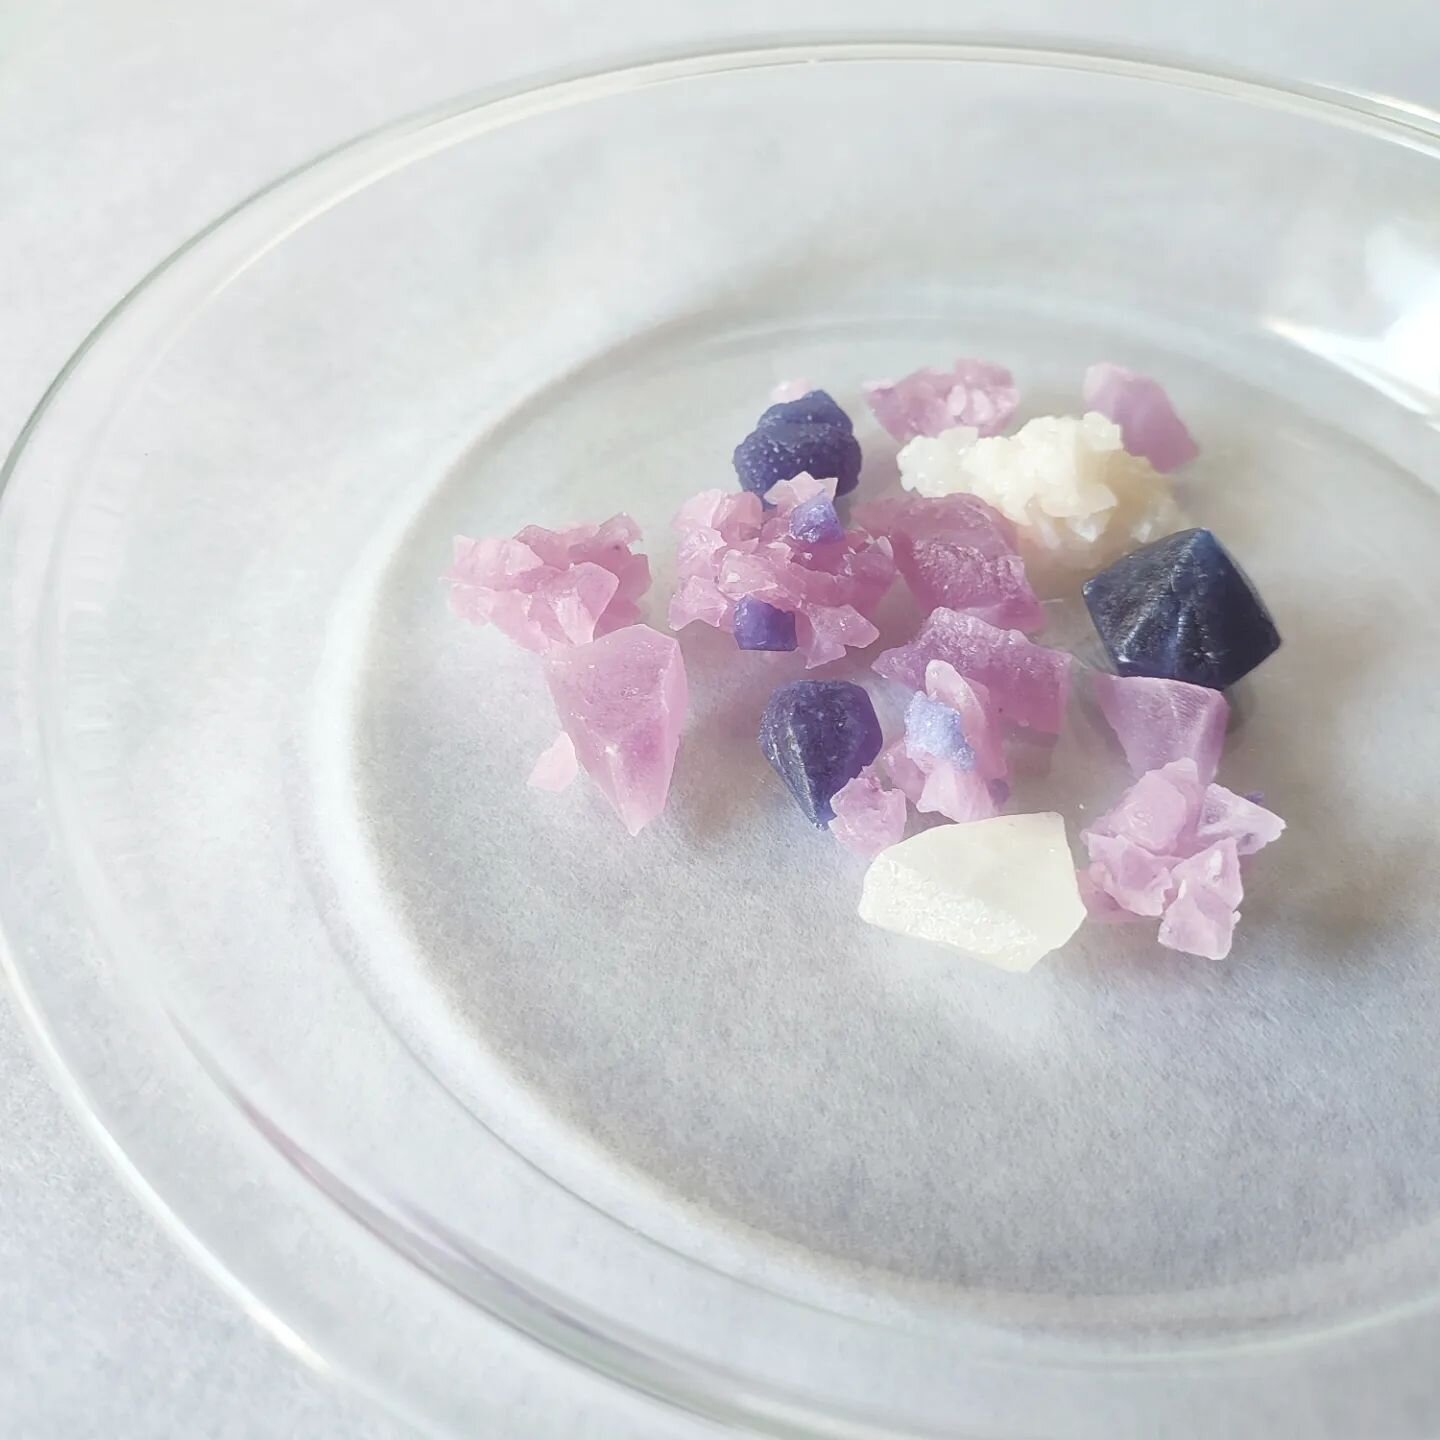 ___

Kohakutou x Butterfly Pea

「琥珀糖 x バタフライピー」

青＆紫　バタフライピー
白　　　レモン(入ってたらラッキー☺)

子供に大人気
紫の色に惹かれるのかな🥰